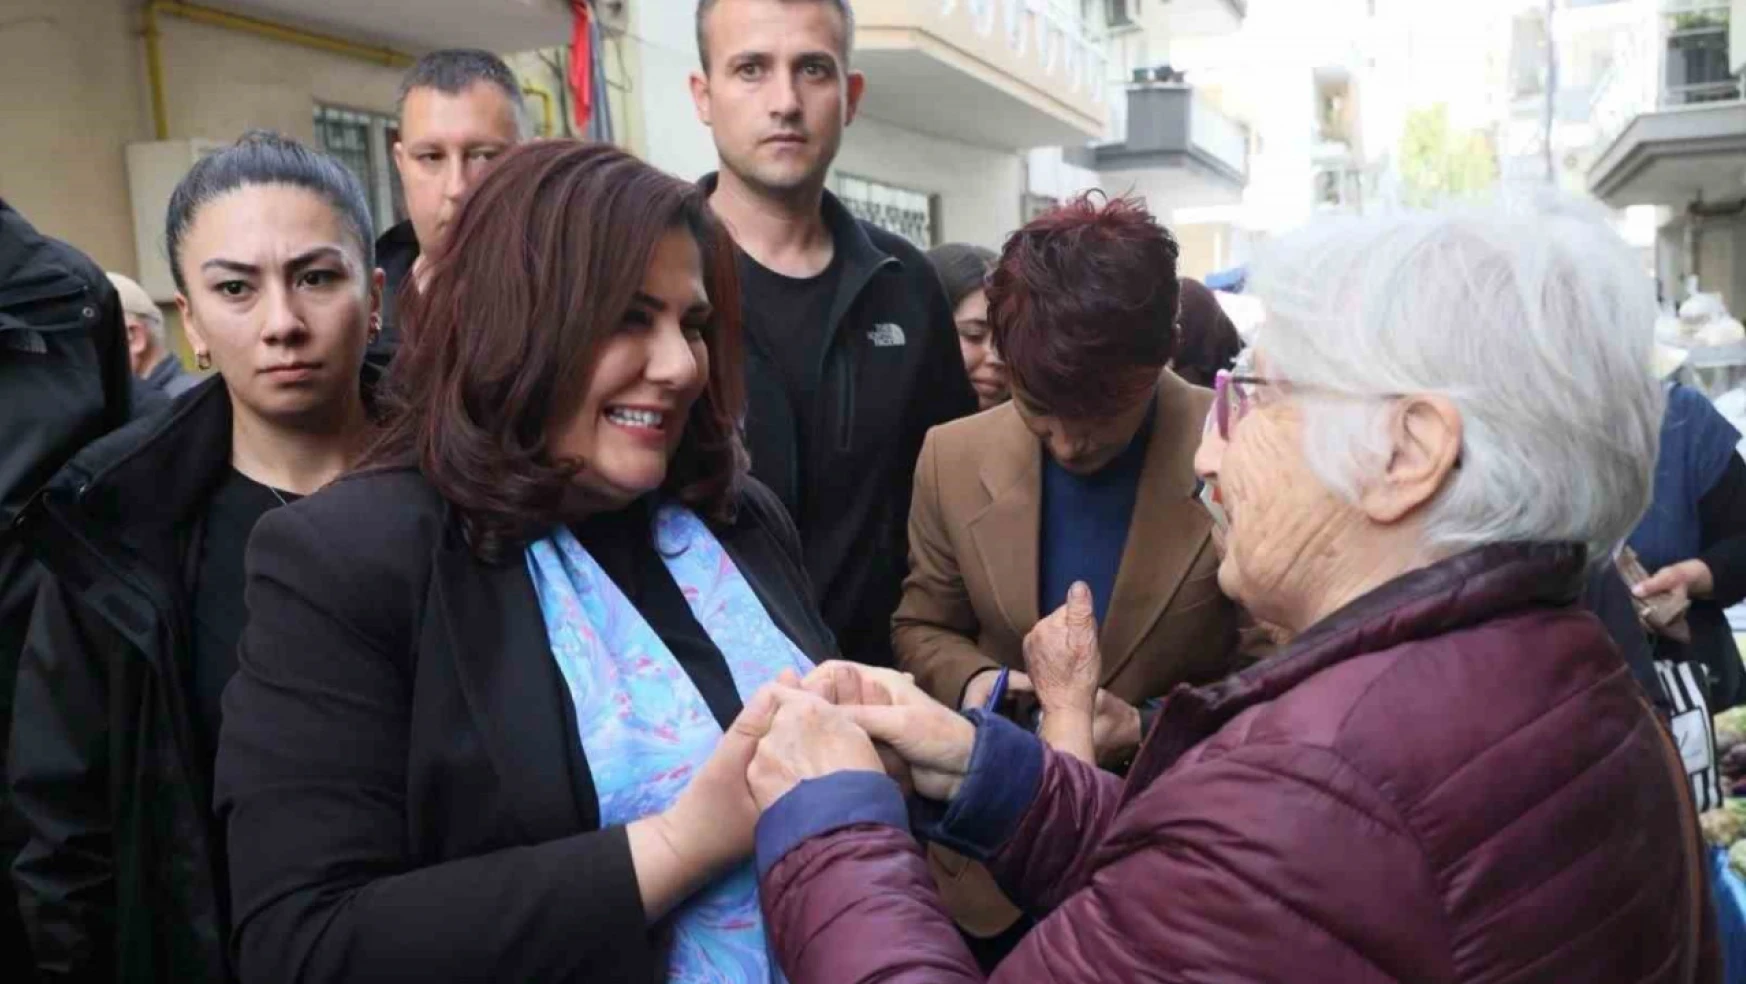 Başkan Çerçioğlu Çarşamba Pazarı'nda vatandaşlarla buluştu